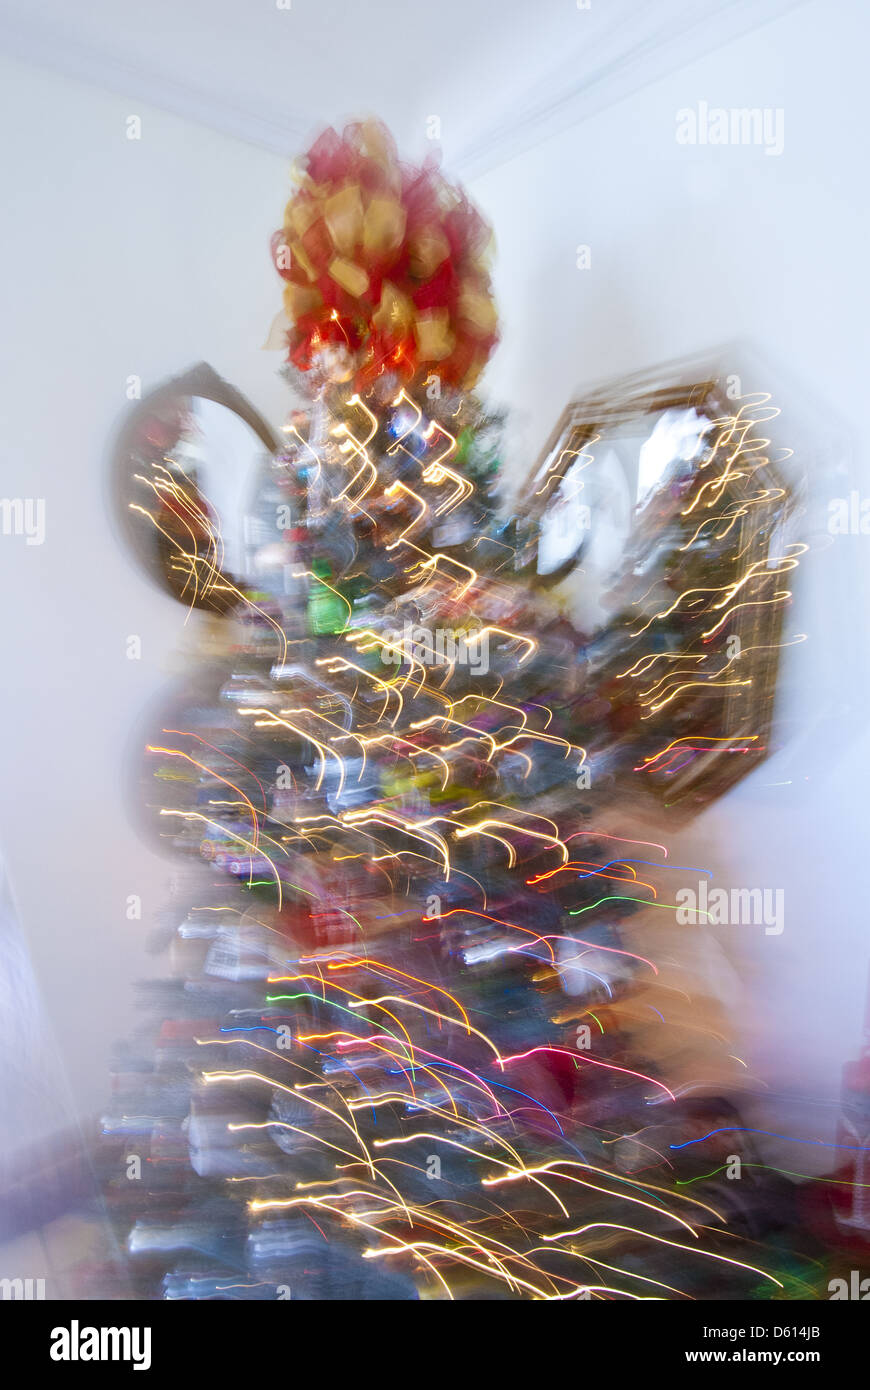 Immagini Di Natale Movimento.Movimento Sfocato Illuminato Di Albero Di Natale Close Up Foto Stock Alamy